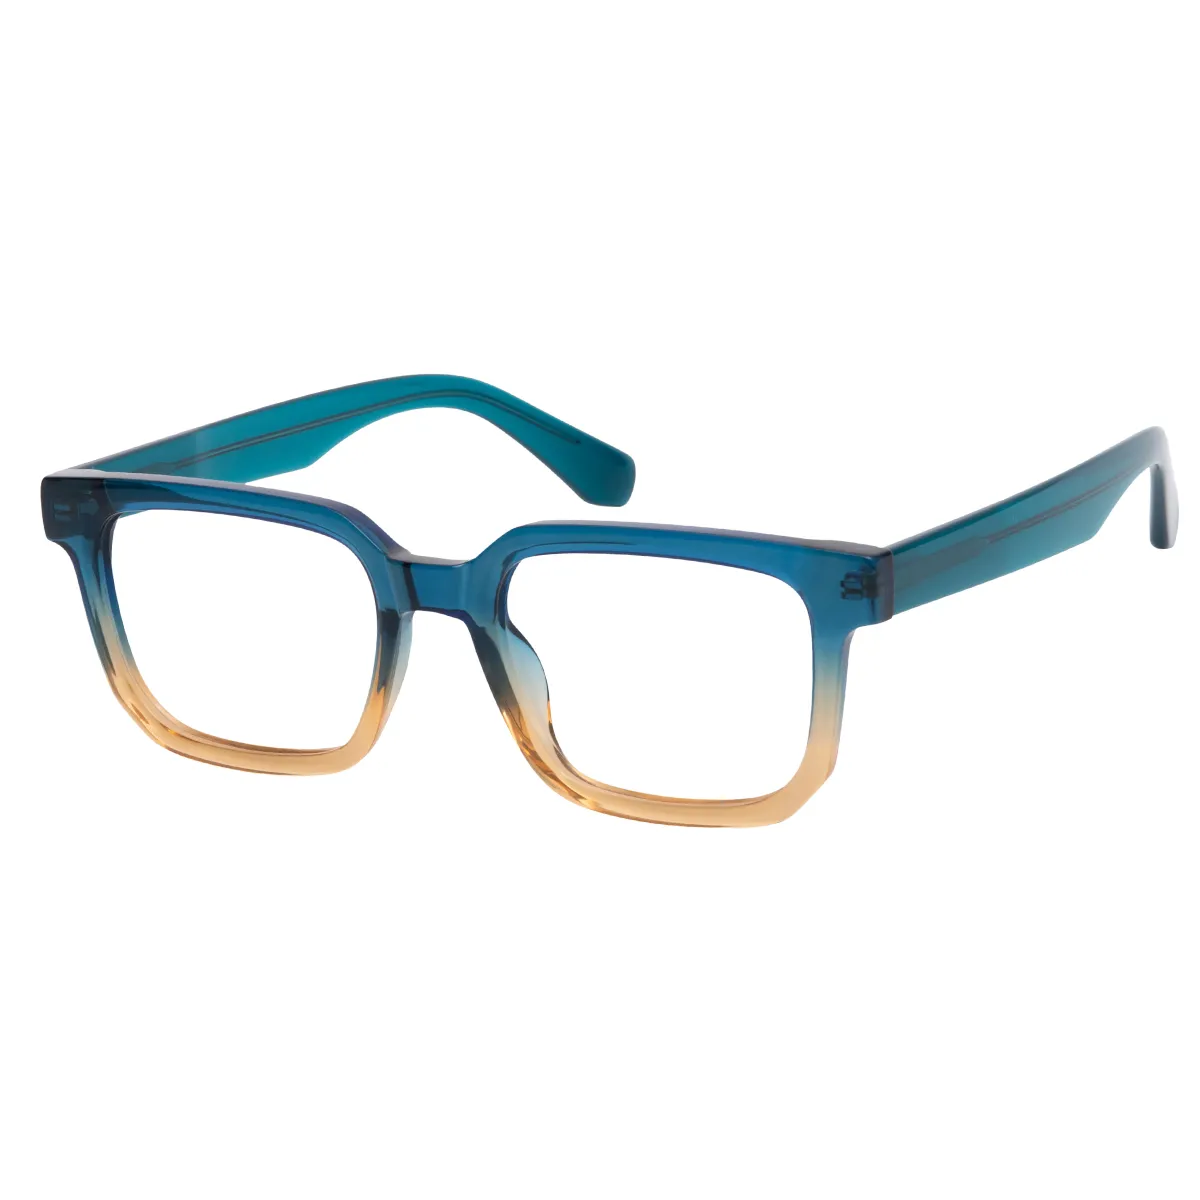 Nate - Rectangle Blue Glasses for Men & Women